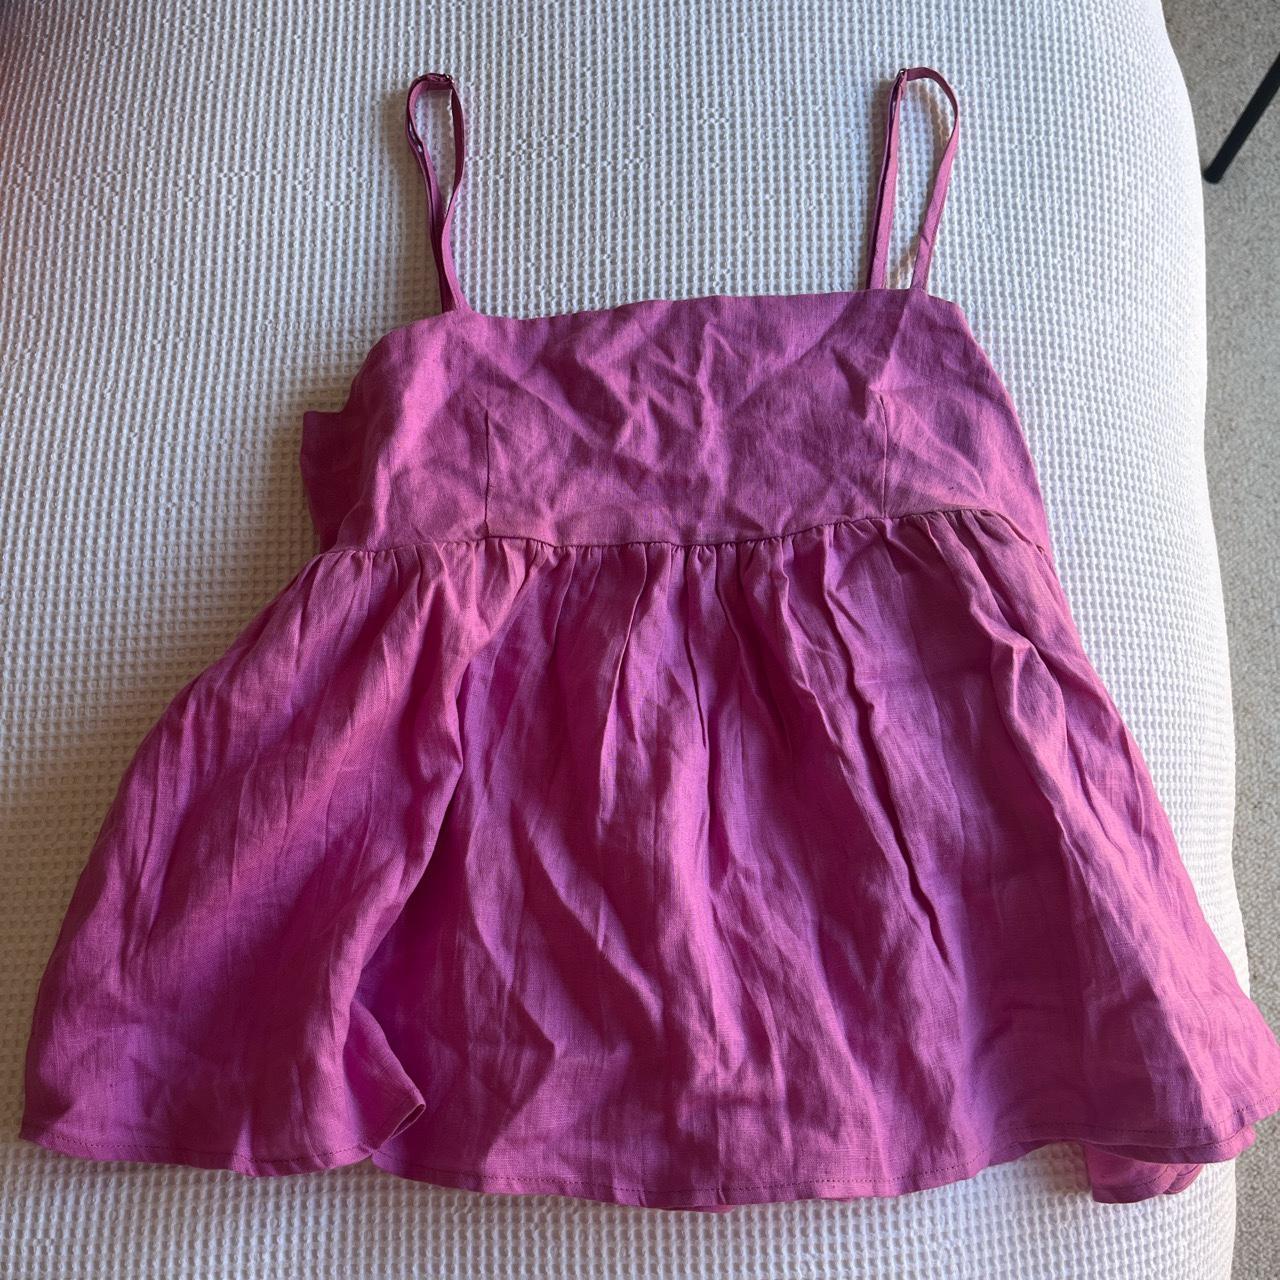 Luxe linen top and short set Pink / purple in... - Depop